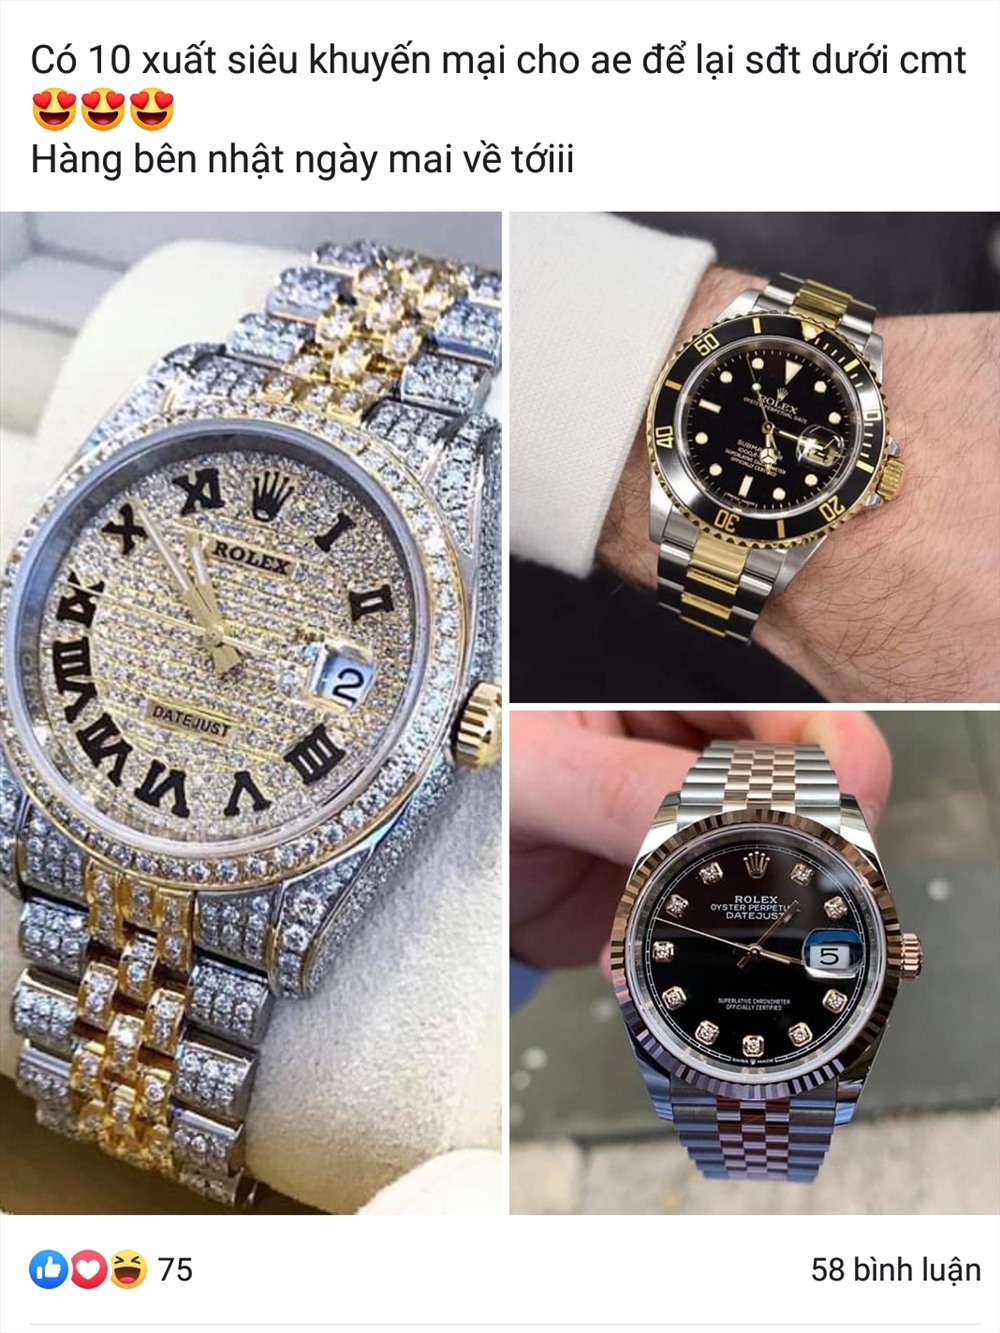 Đồng hồ Rolex giá 700 ngàn đồng, theo các chuyên gia về đồng đồ thì 100% là hàng giả, nhái thương hiệu - Ảnh: PV.  